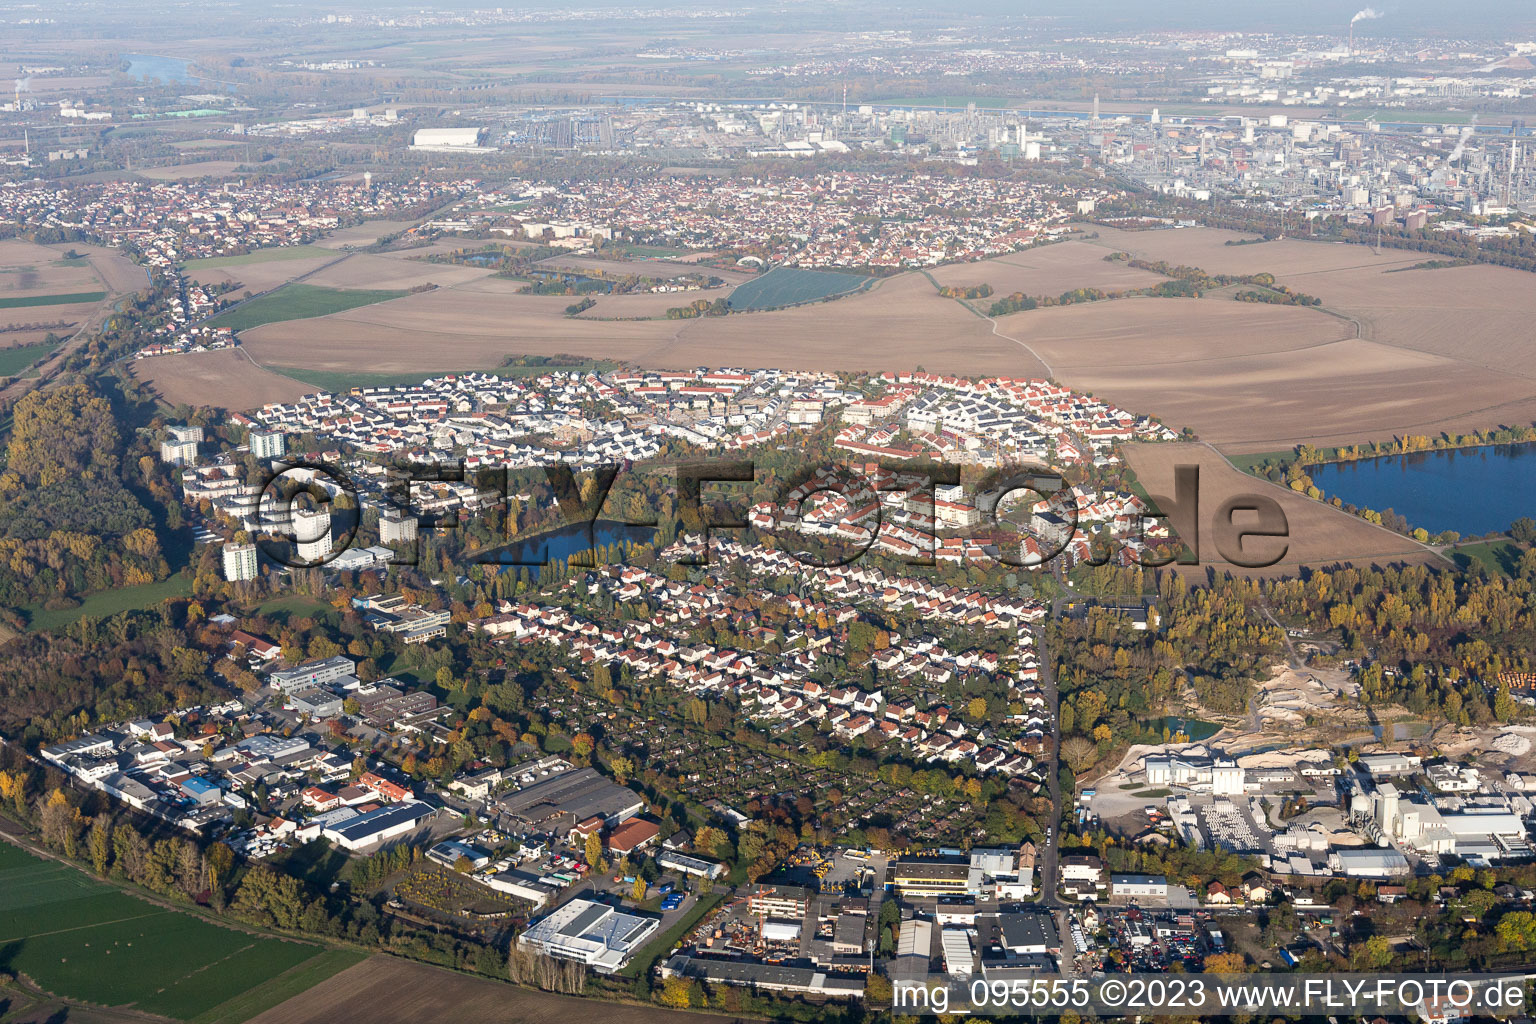 Quartier Oggersheim in Ludwigshafen am Rhein dans le département Rhénanie-Palatinat, Allemagne du point de vue du drone